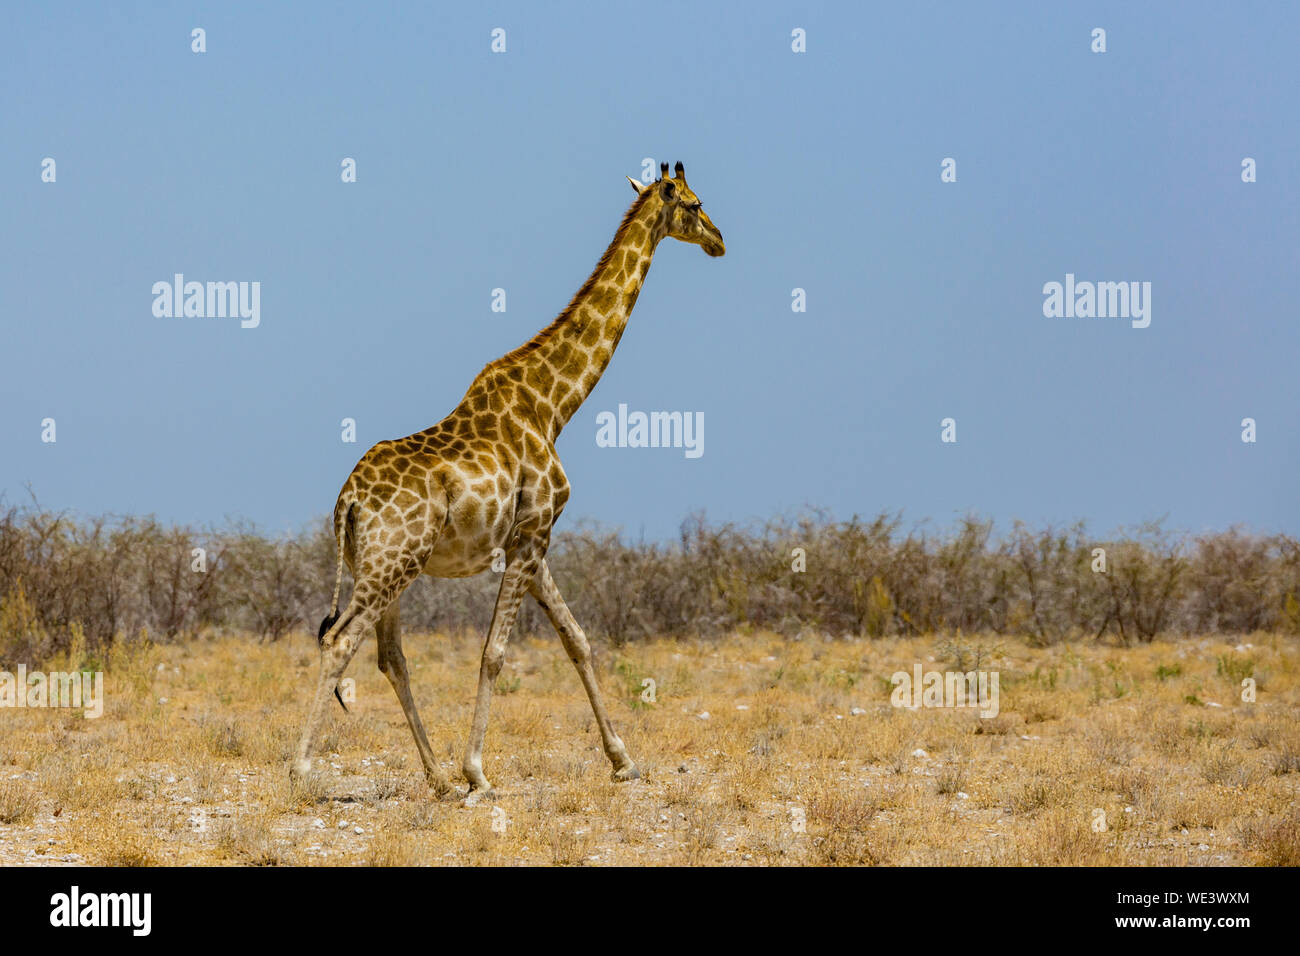 Una jirafa macho natural en la sabana de arbustos, cielo azul Foto de stock